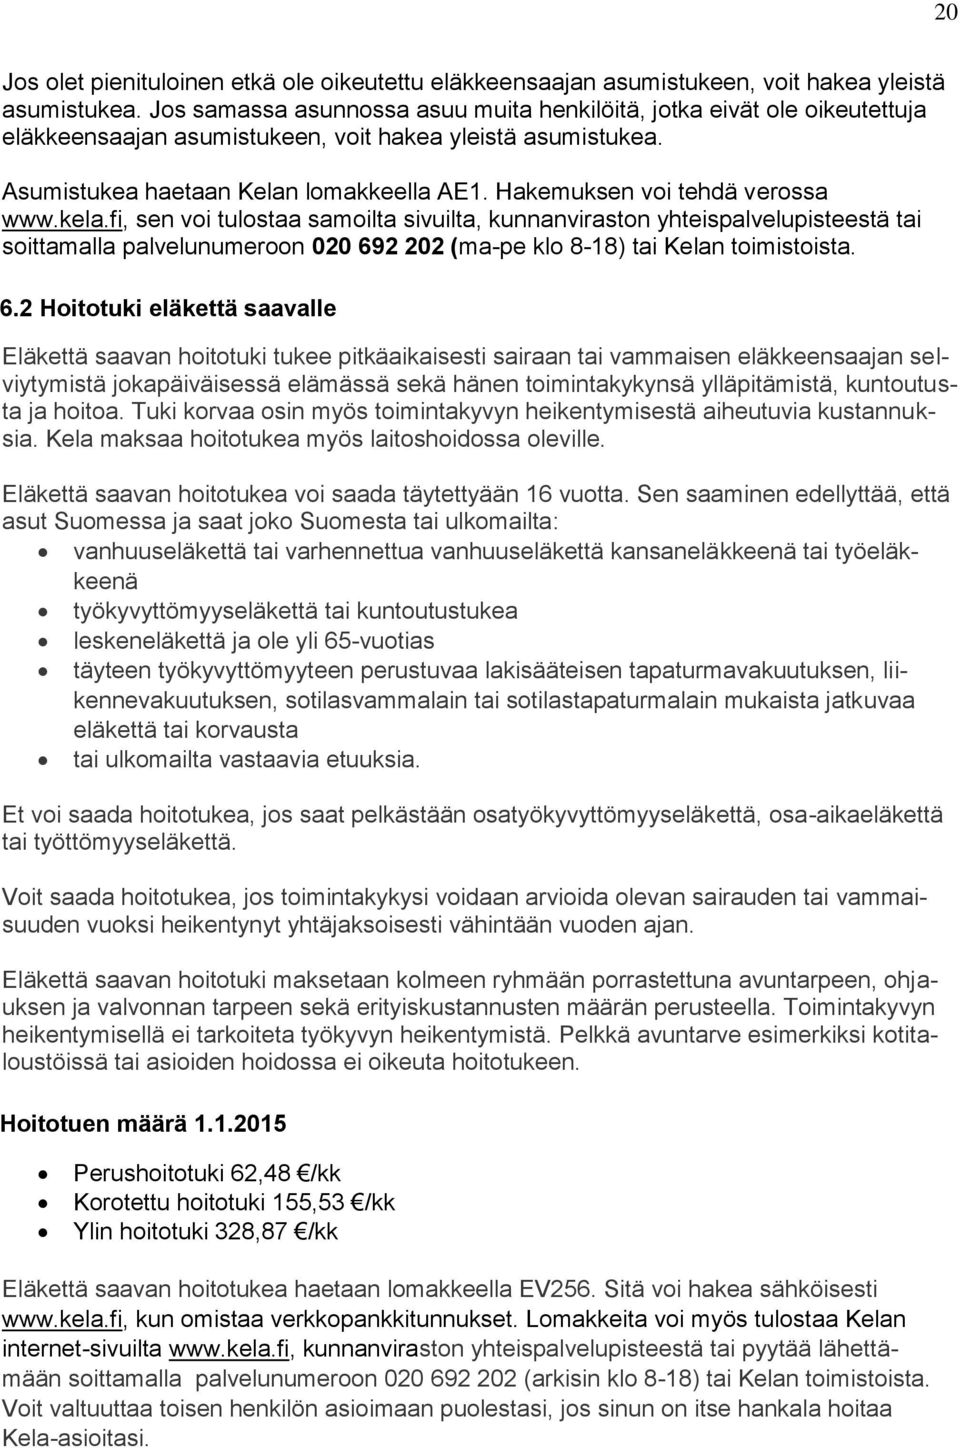 Hakemuksen voi tehdä verossa www.kela.fi, sen voi tulostaa samoilta sivuilta, kunnanviraston yhteispalvelupisteestä tai soittamalla palvelunumeroon 020 692 202 (ma-pe klo 8-18) tai Kelan toimistoista.